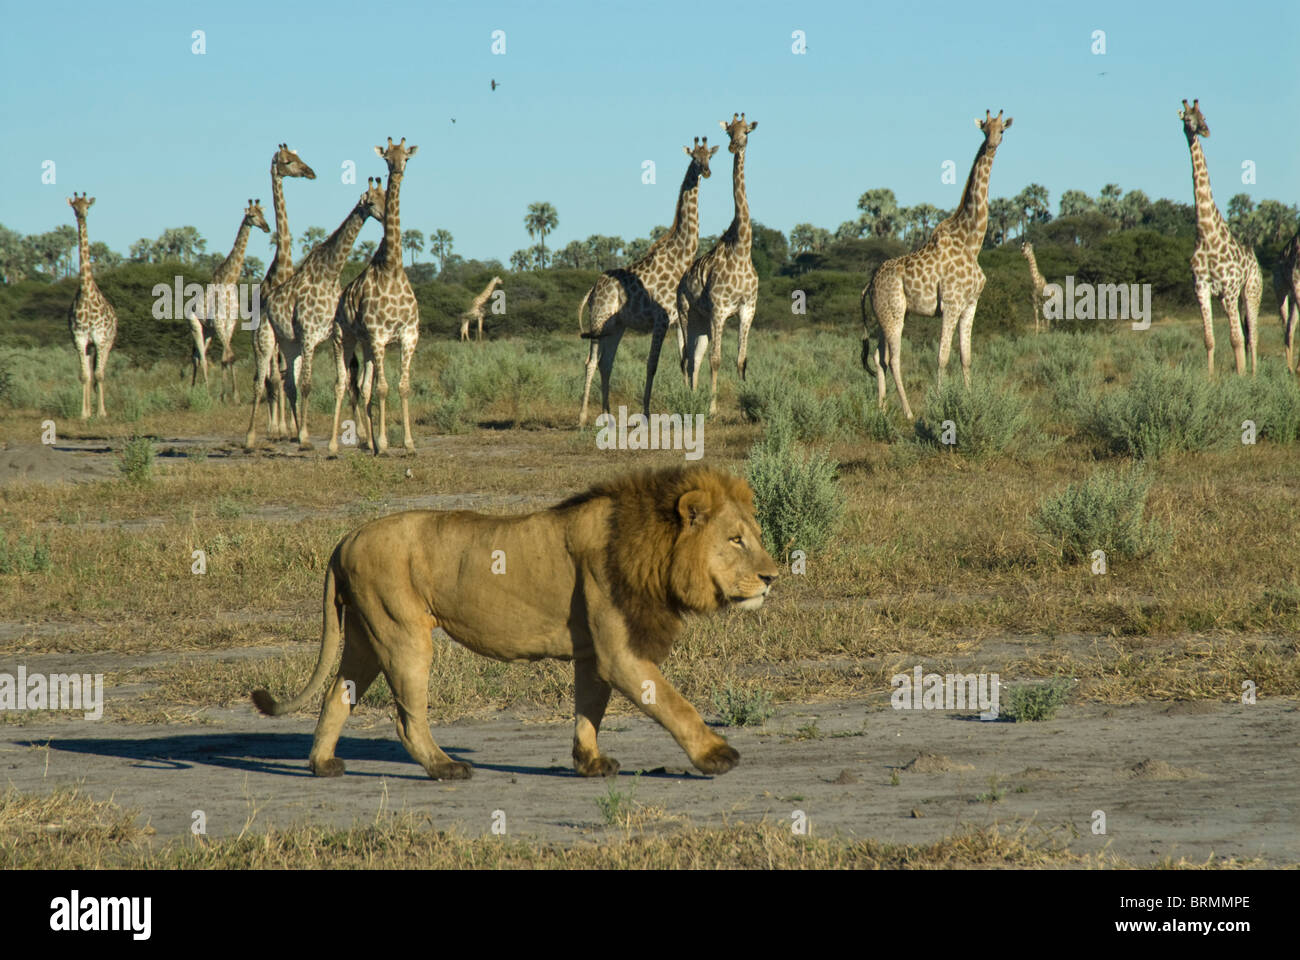 León macho caminando por una manada de jirafas Foto de stock